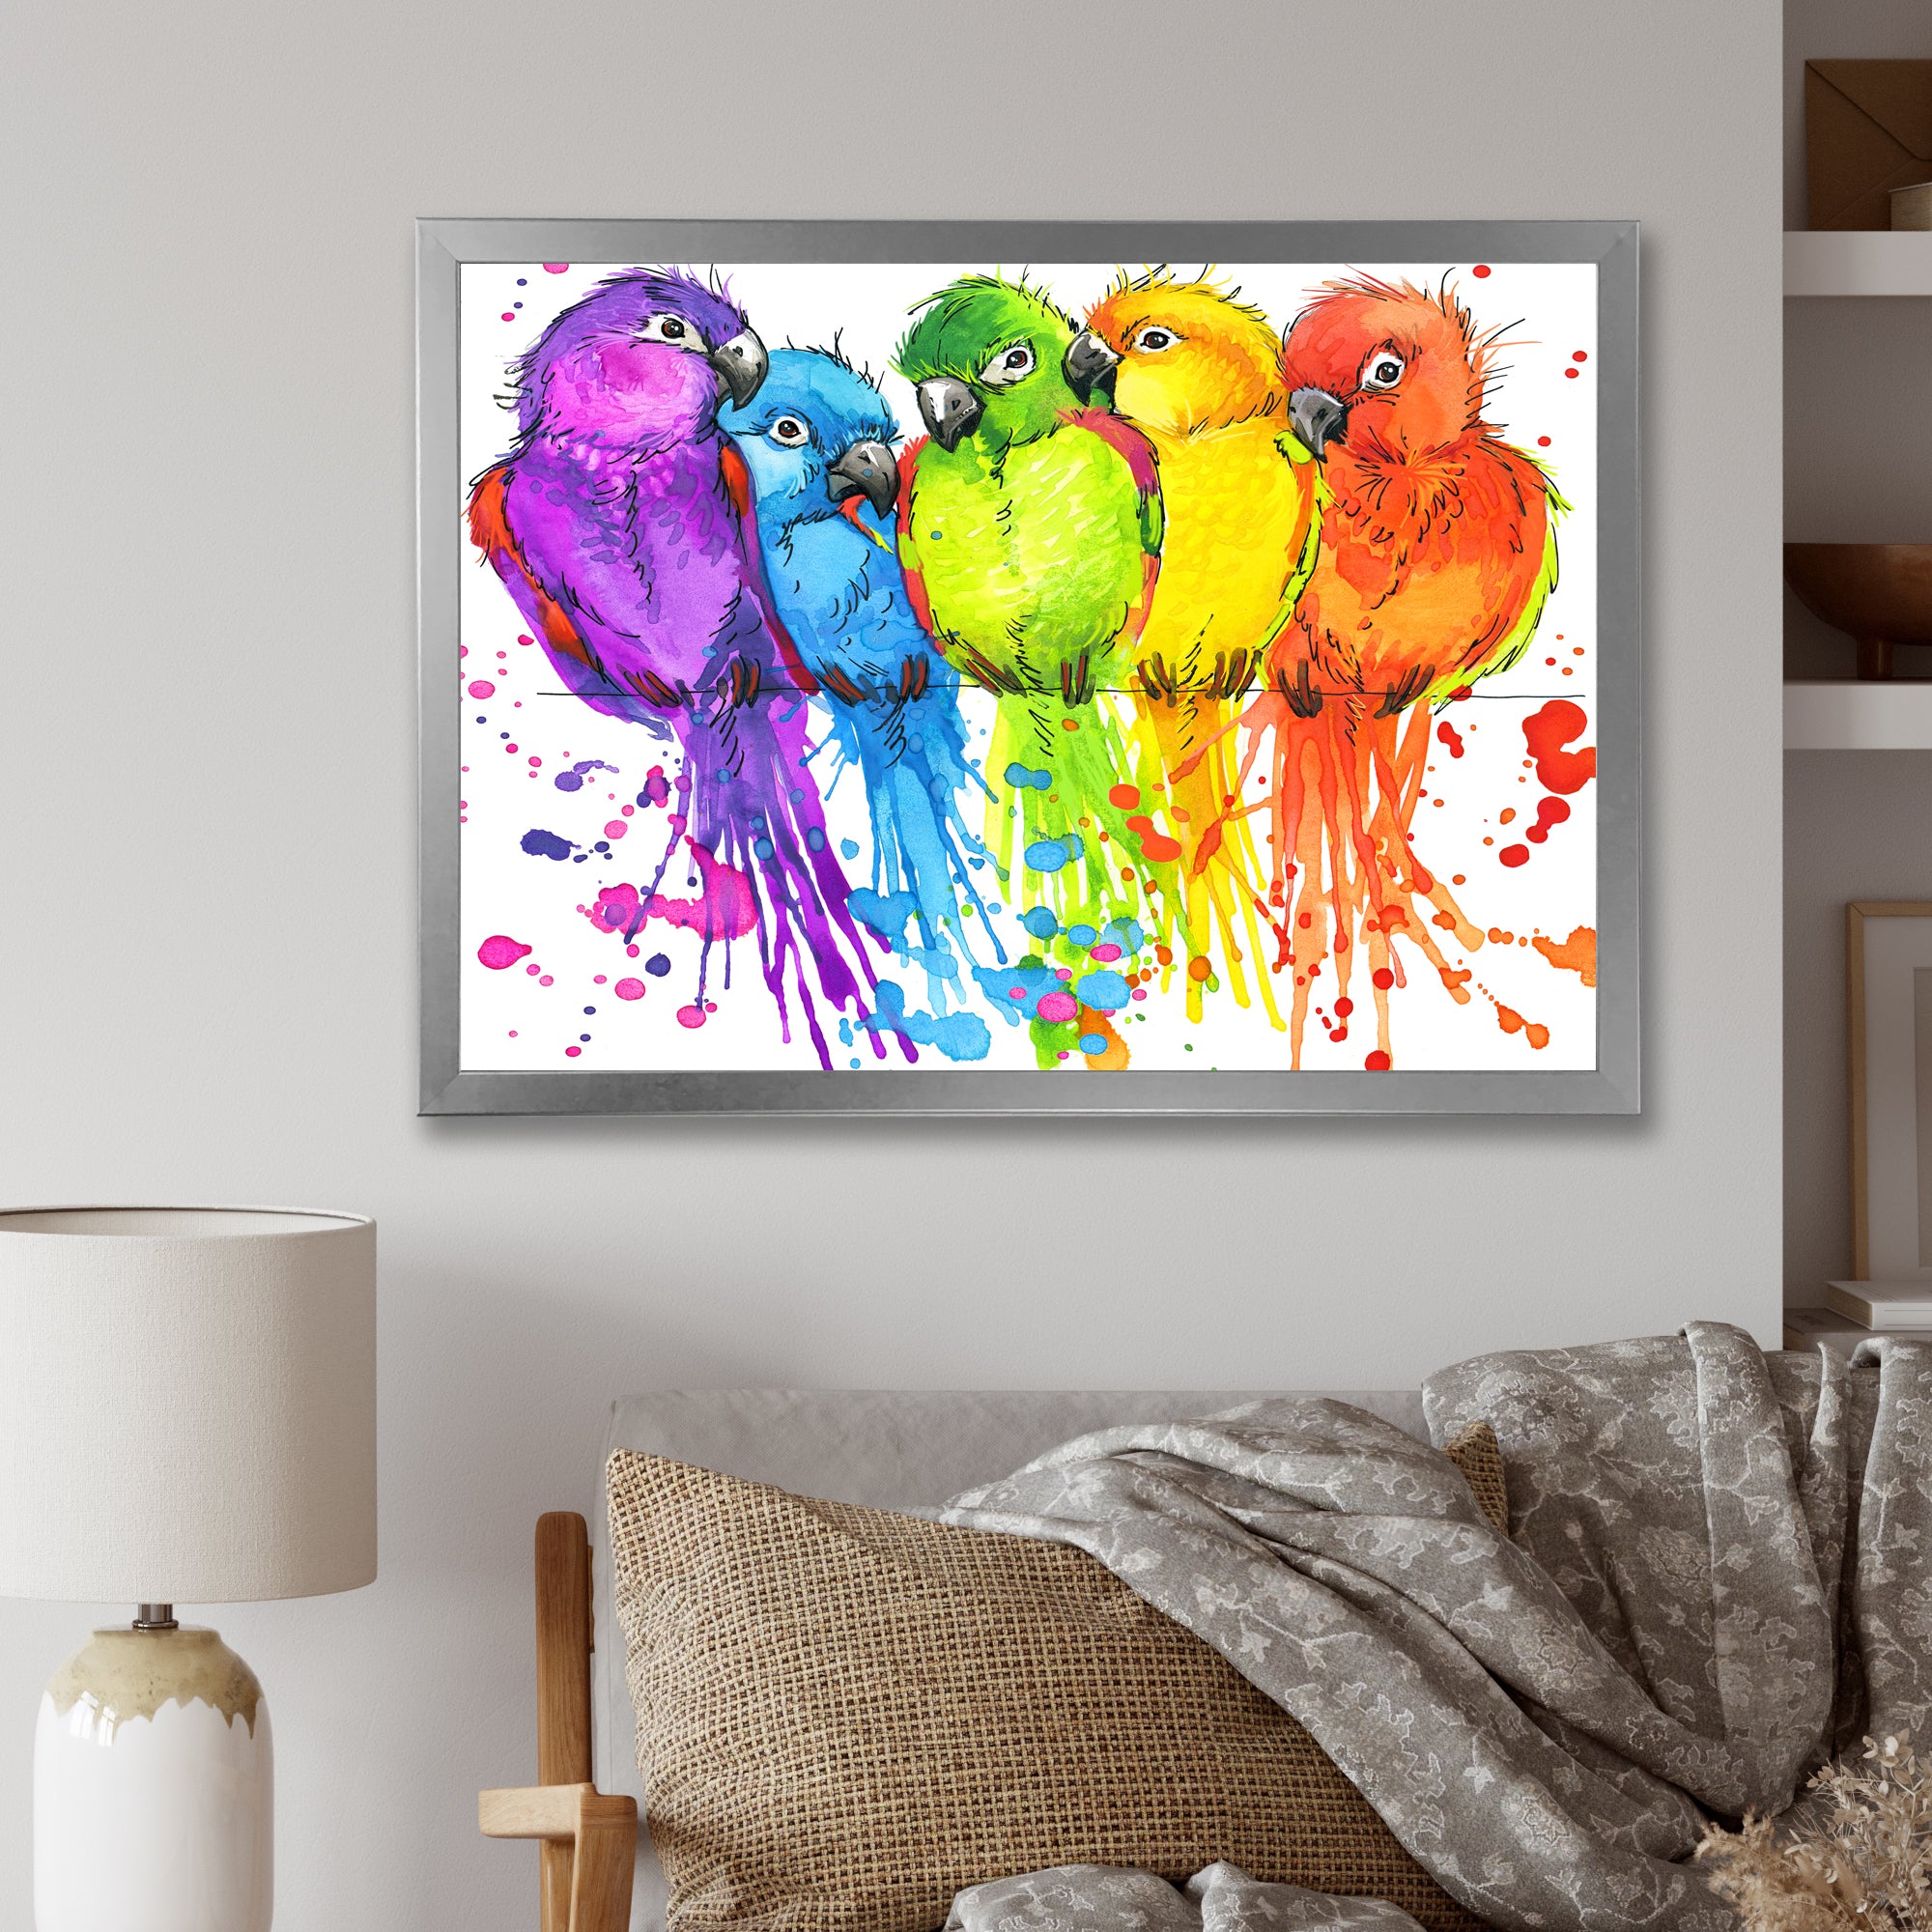 Colorful Parrots